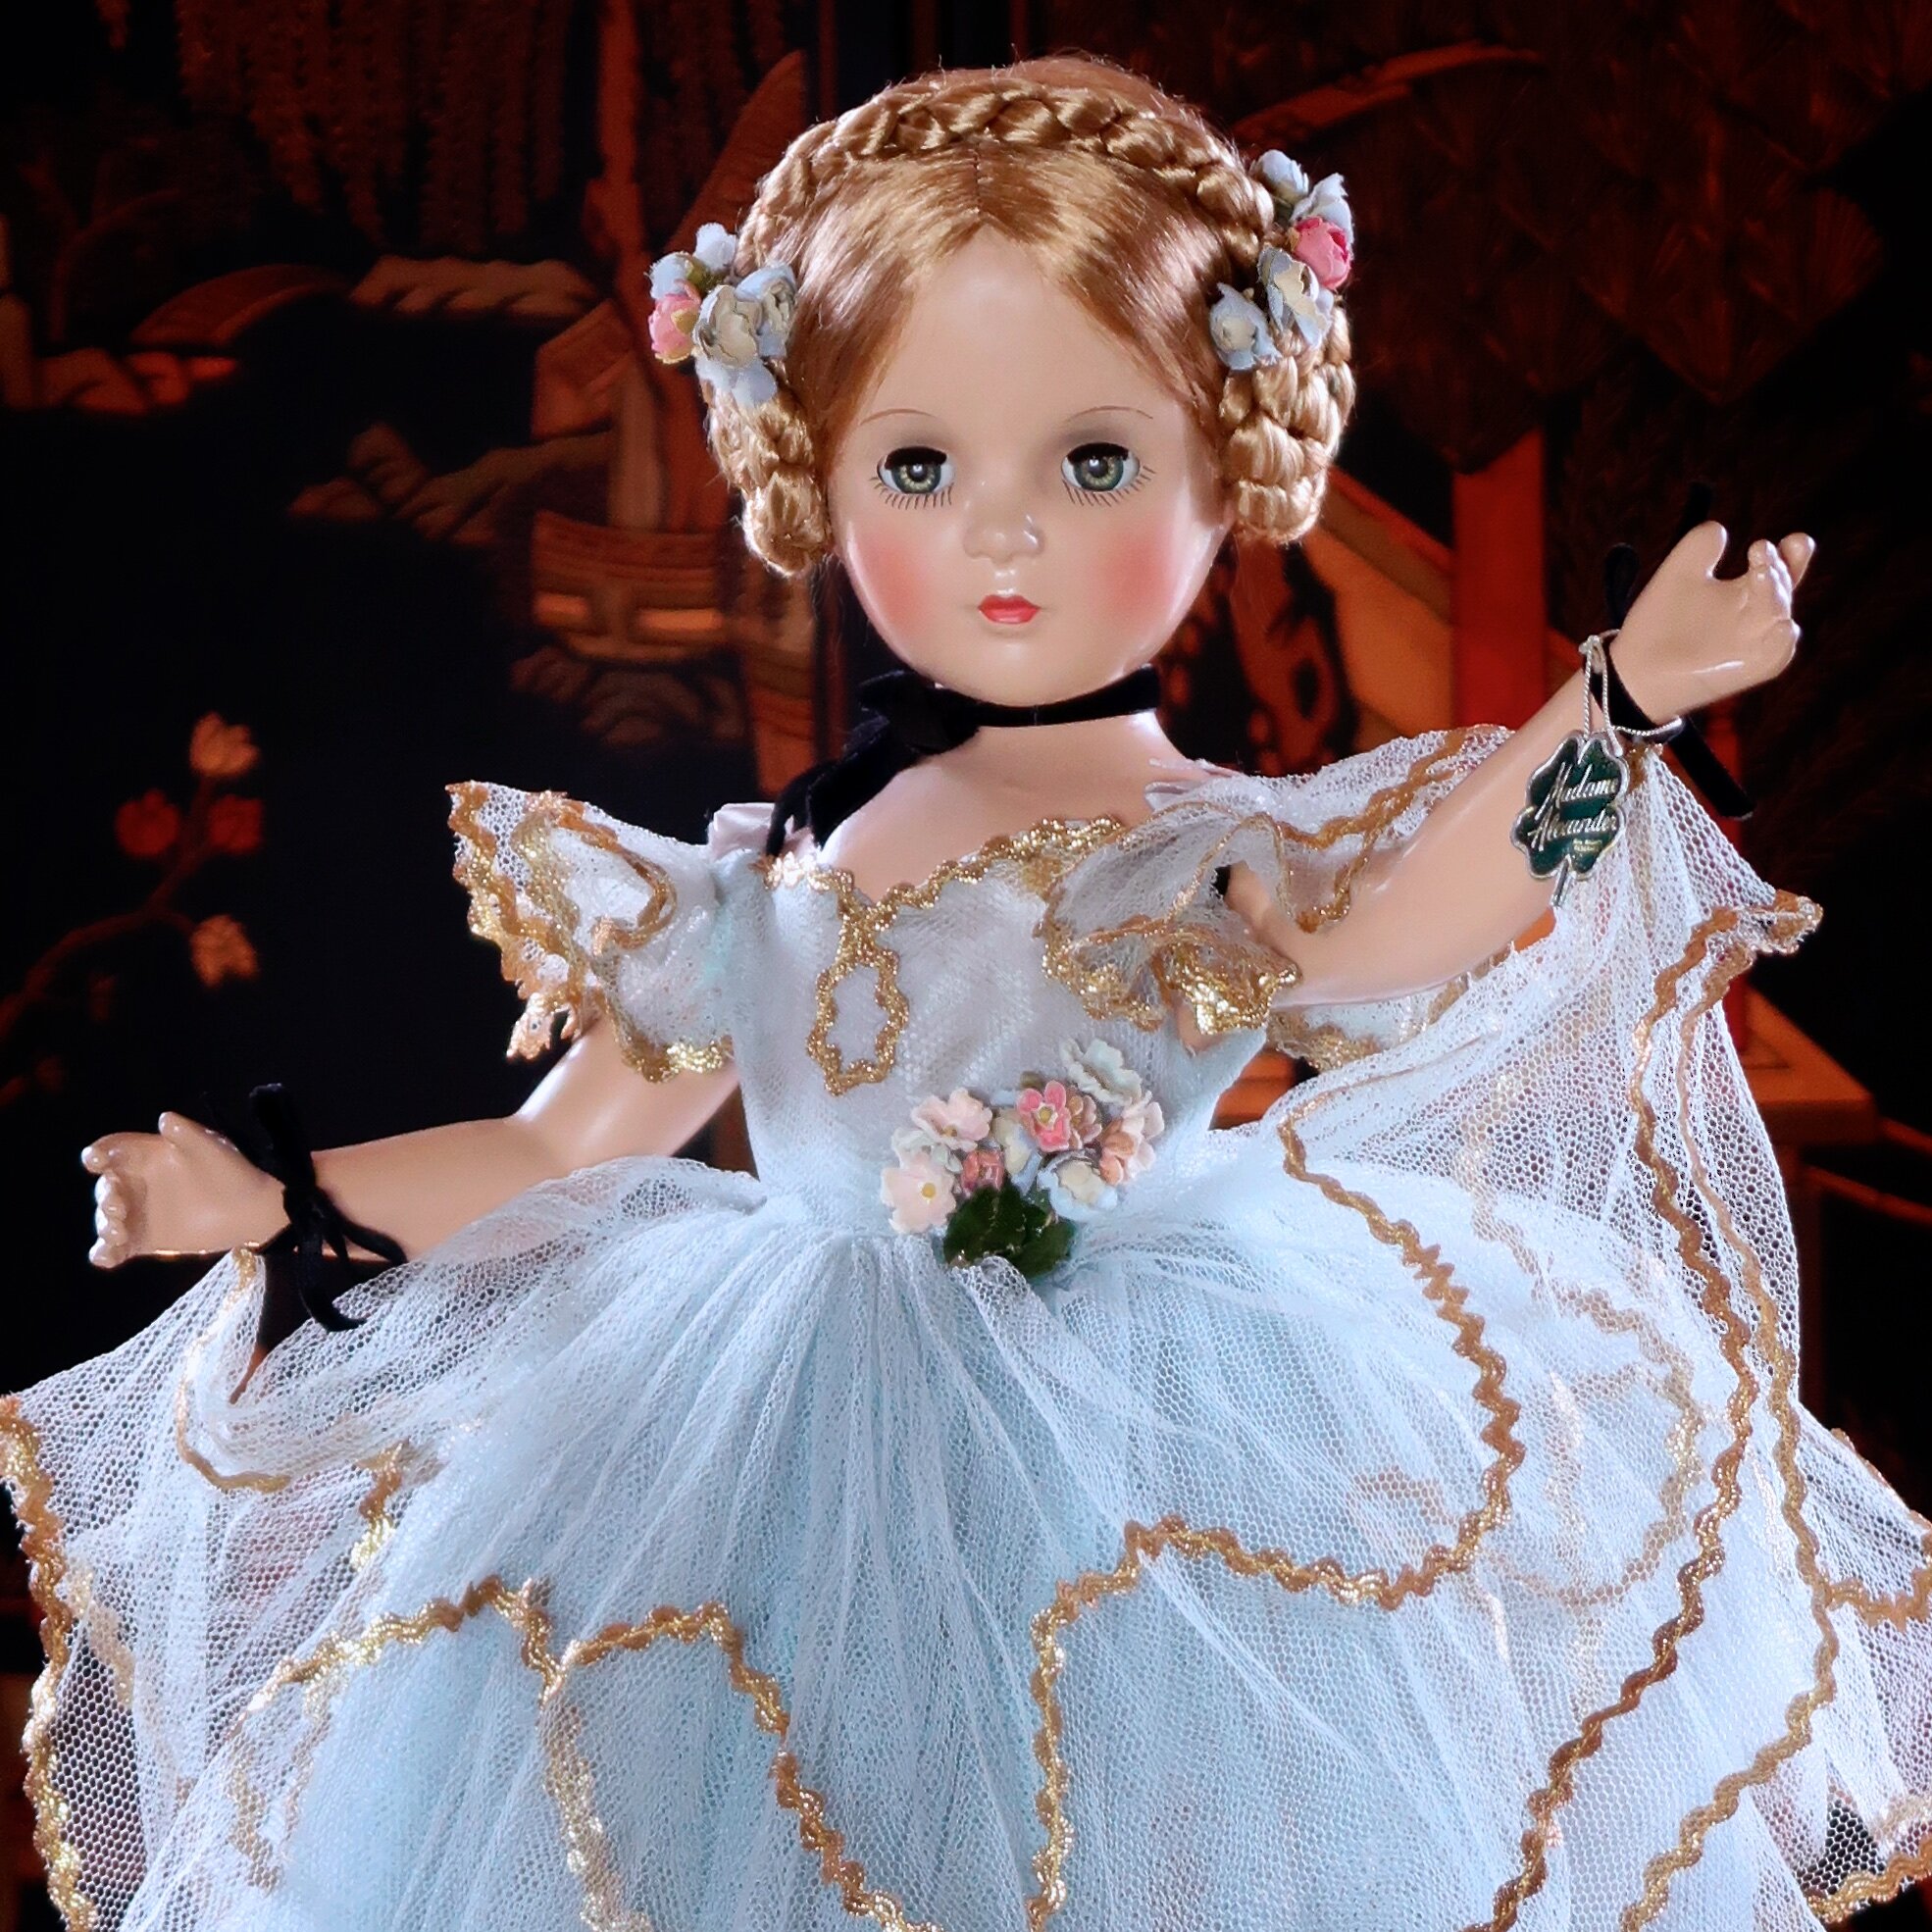 Glamorous White Elbow Opera Gloves for 22" Miss Revlon Fashion Doll 